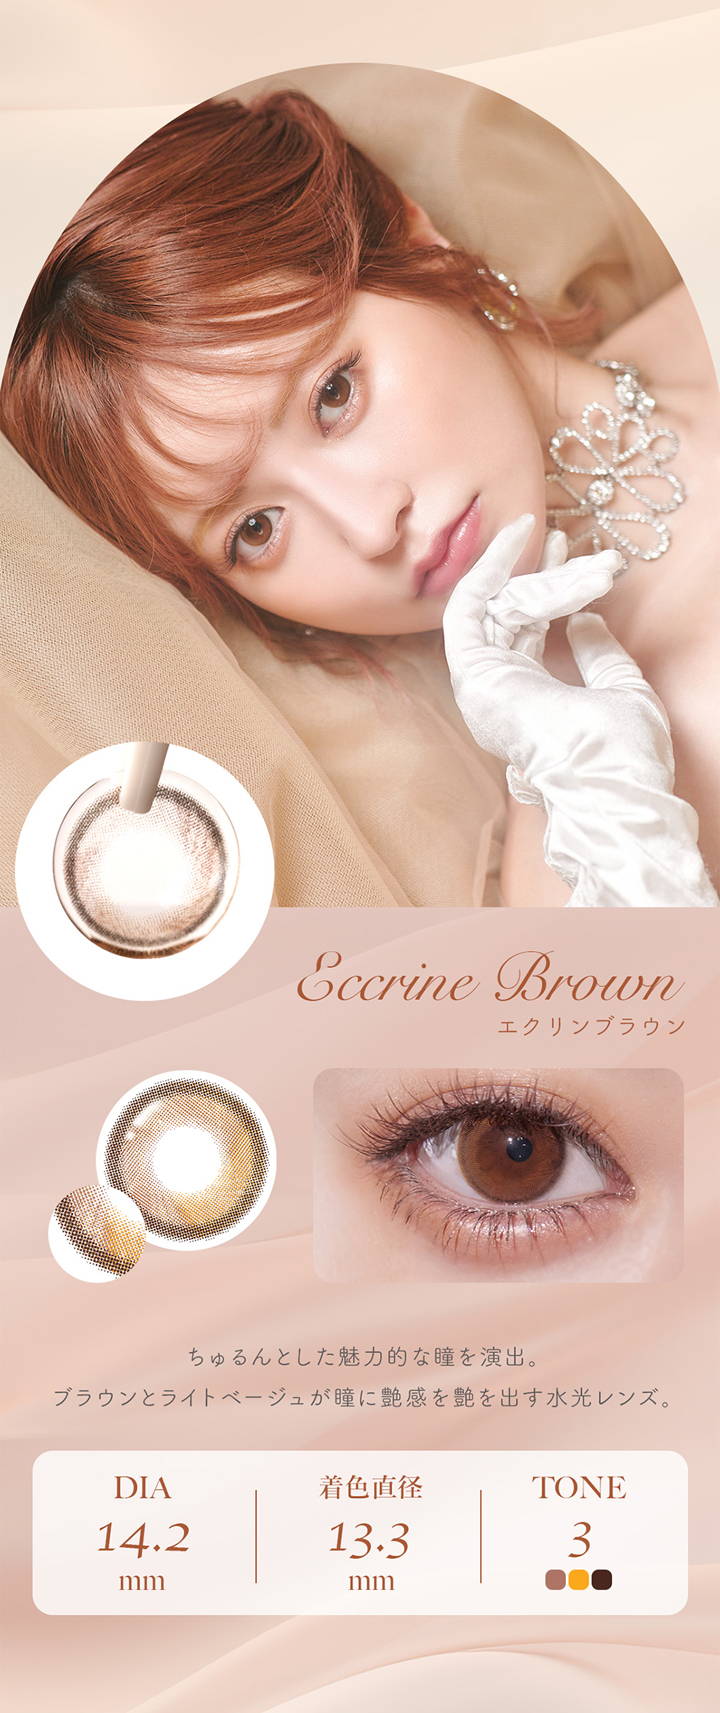 フェレーヌ(ferenne),Eccrine Brown,エクリンブラウン,ちゅるんとした魅力的な瞳を演出。,ブラウンとライトベージュが瞳に艶感を艶を出す水光レンズ。DIA 14.2mm,着色直径 13.3mm,TONE 3|フェレーヌ ferenne カラコン カラーコンタクト